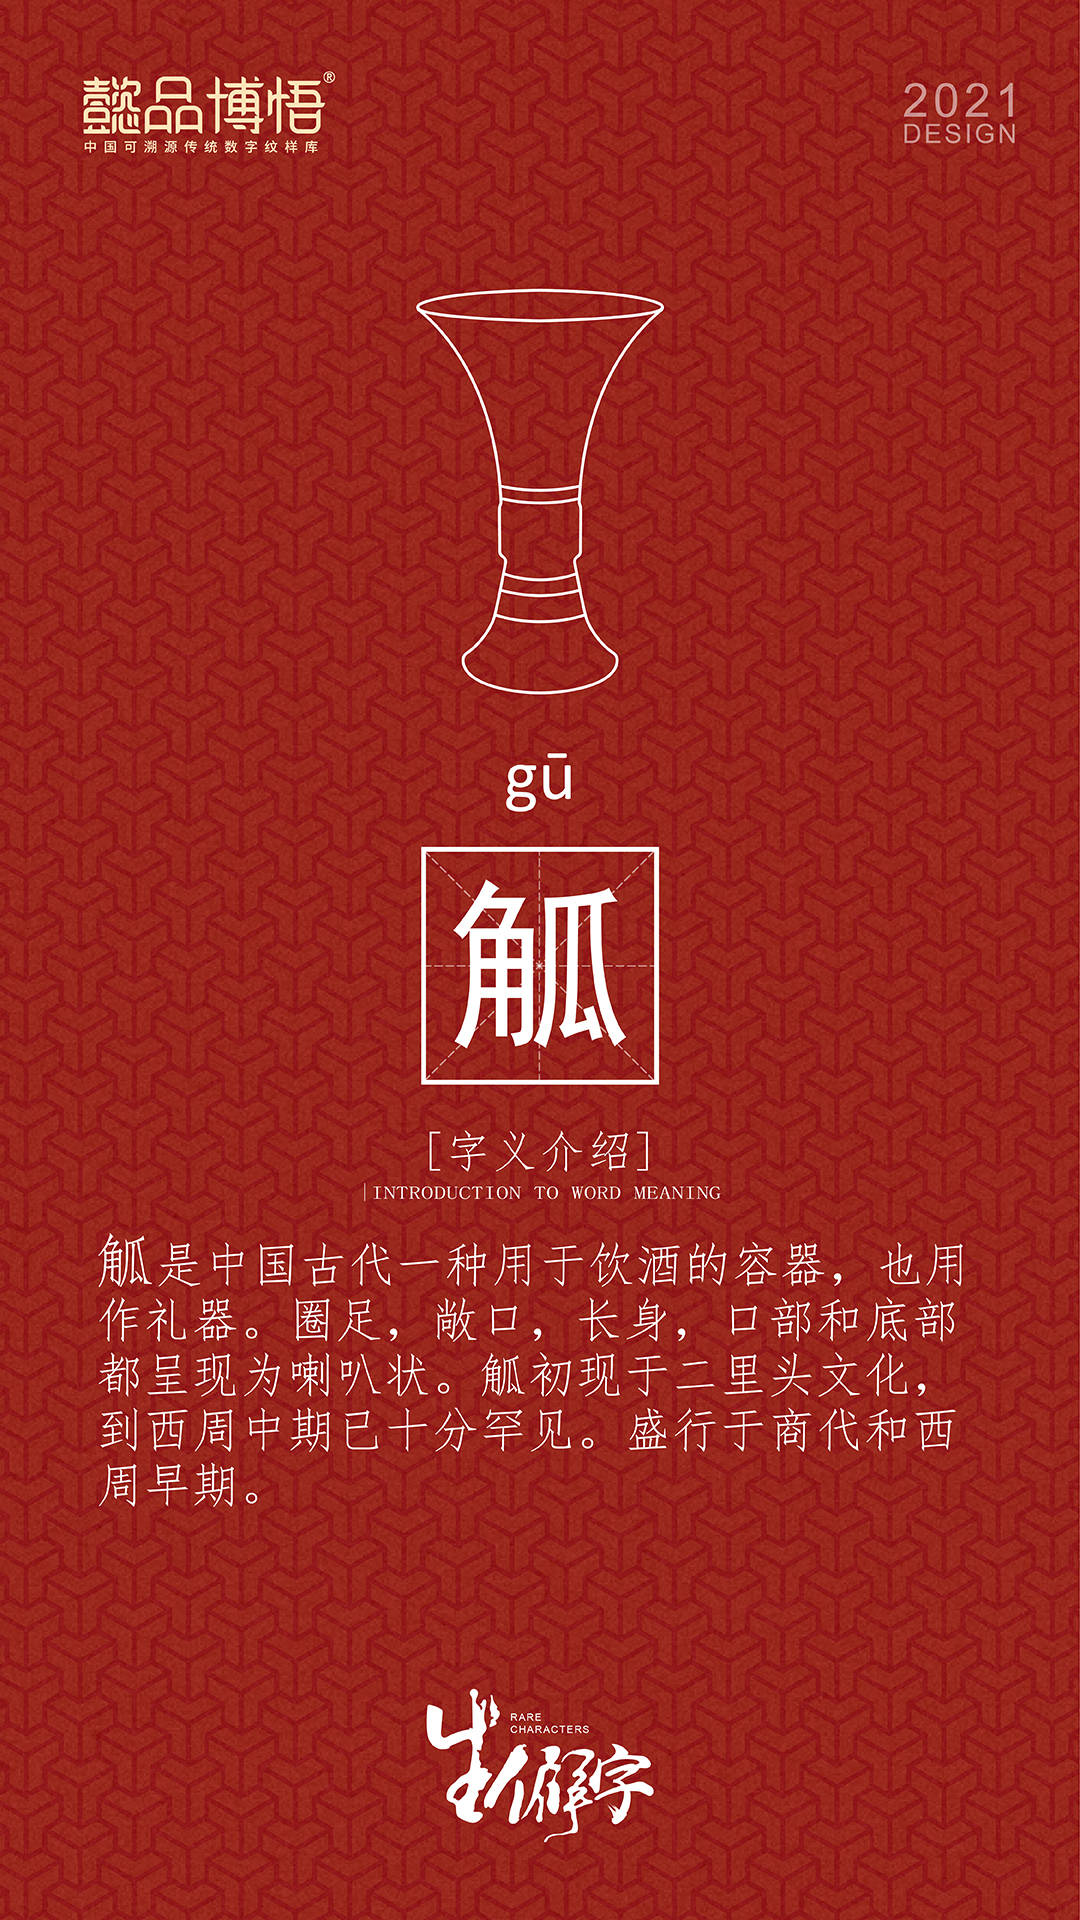 懿品博悟 带你发现中国传统文化 汉字的美 改革